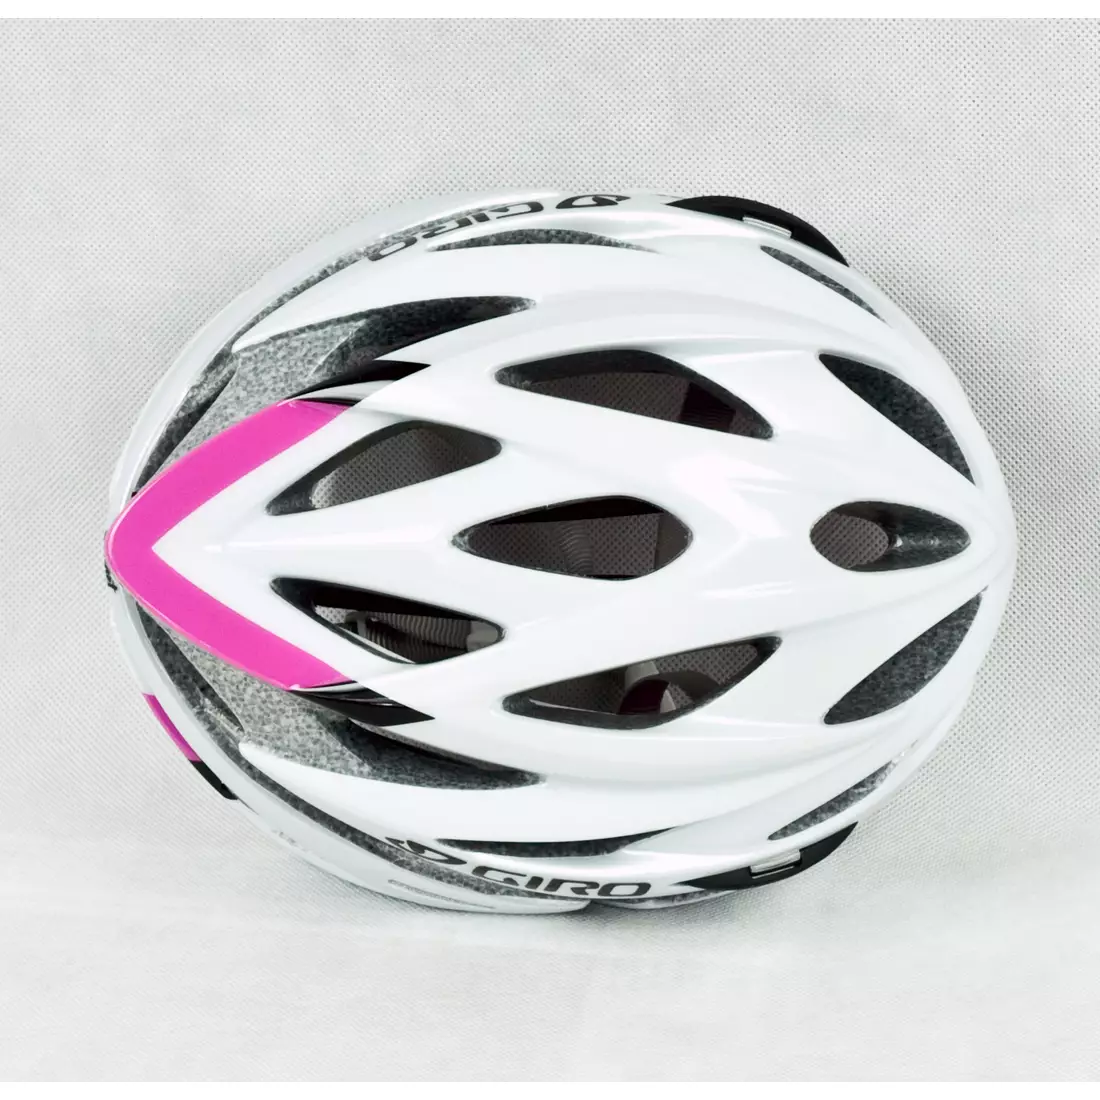 GIRO SONNET Damen-Fahrradhelm, weiß und rosa